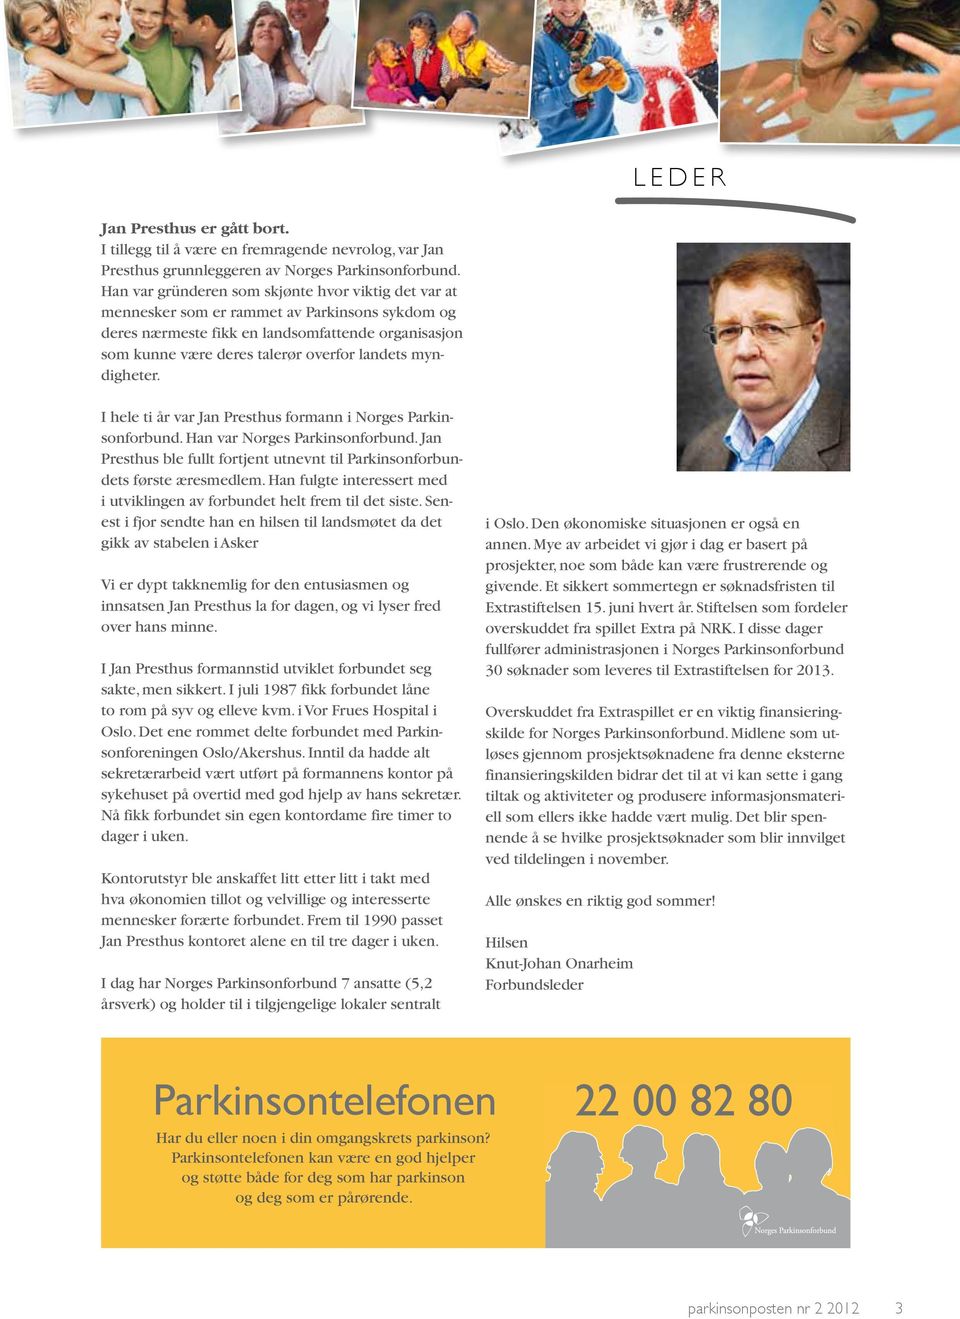 myndigheter. I hele ti år var Jan Presthus formann i Norges Parkinsonforbund. Han var Norges Parkinsonforbund. Jan Presthus ble fullt fortjent utnevnt til Parkinsonforbundets første æresmedlem.